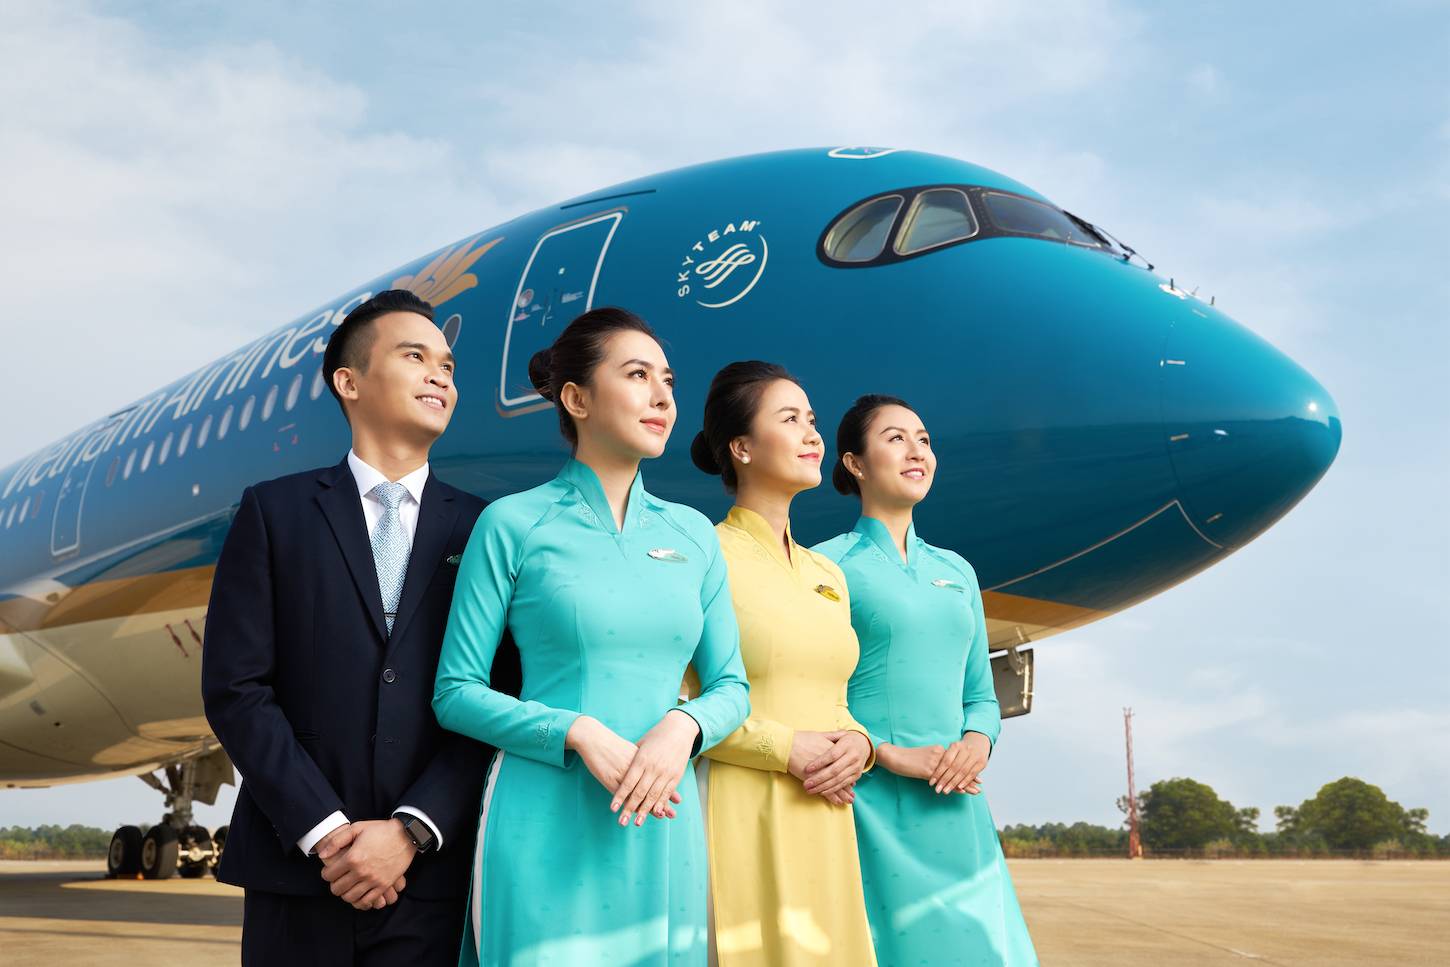 Вьетнамские авиалинии авиакомпания - официальный сайт vietnam airlines, контакты, авиабилеты и расписание рейсов вьетнам эйрлайнс 2022